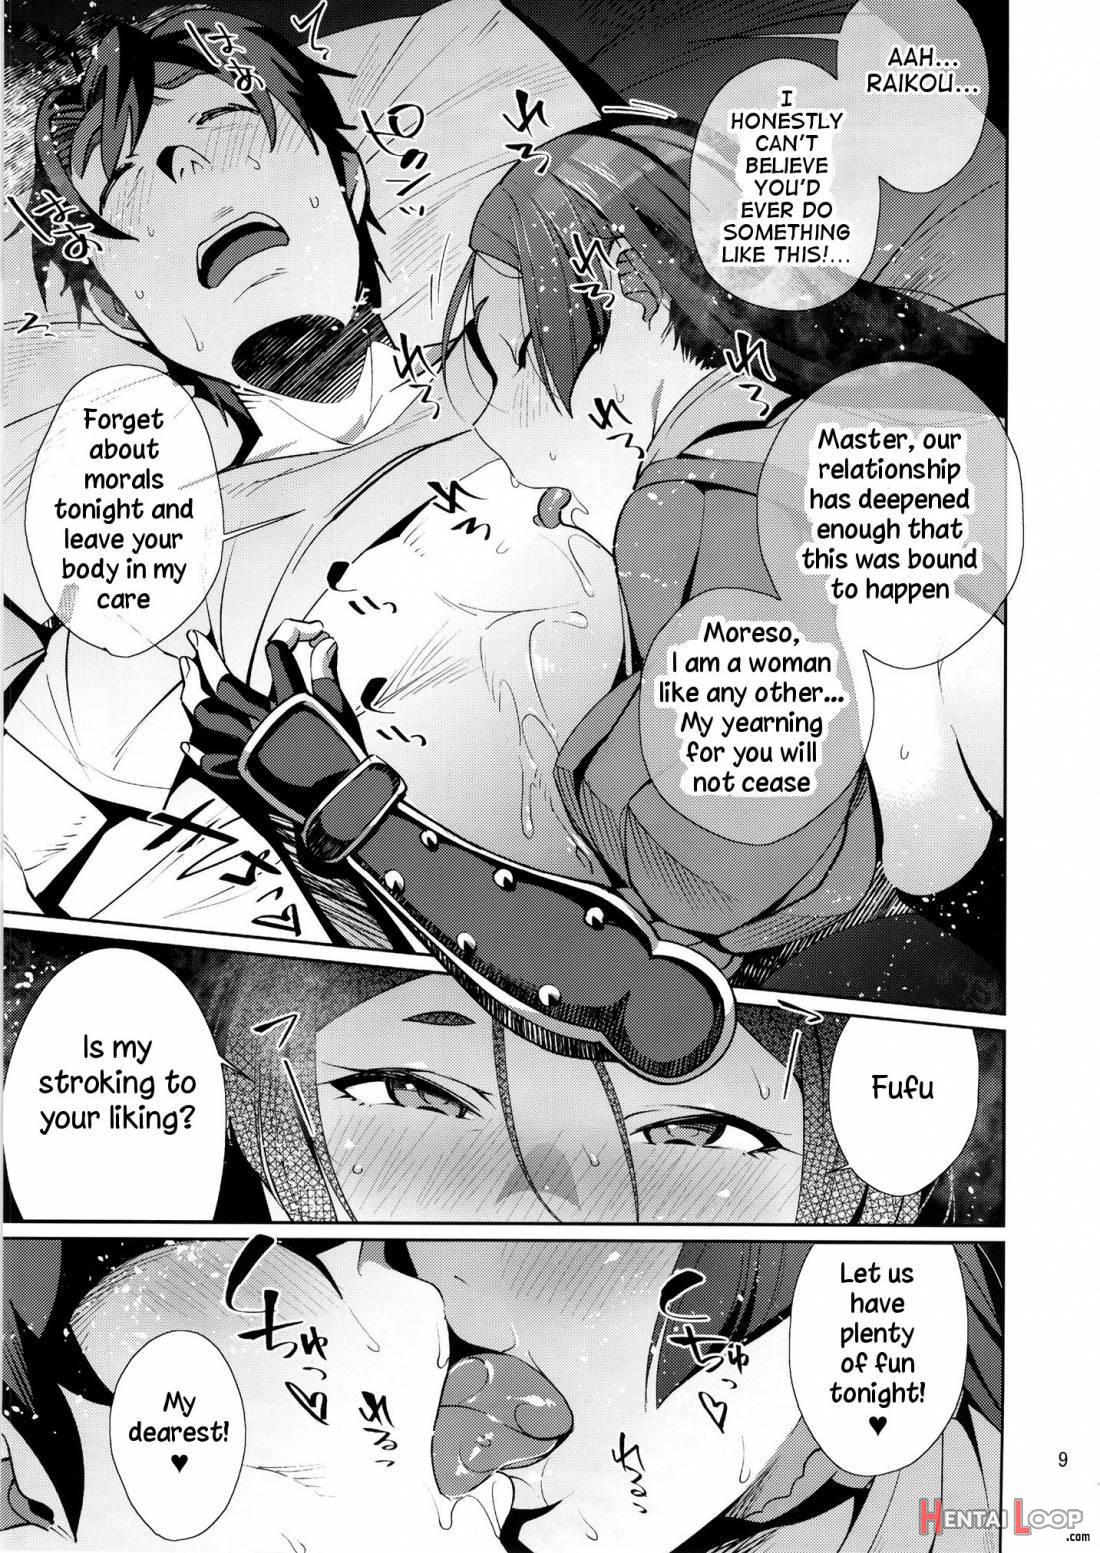 Raikou Sentimental page 8